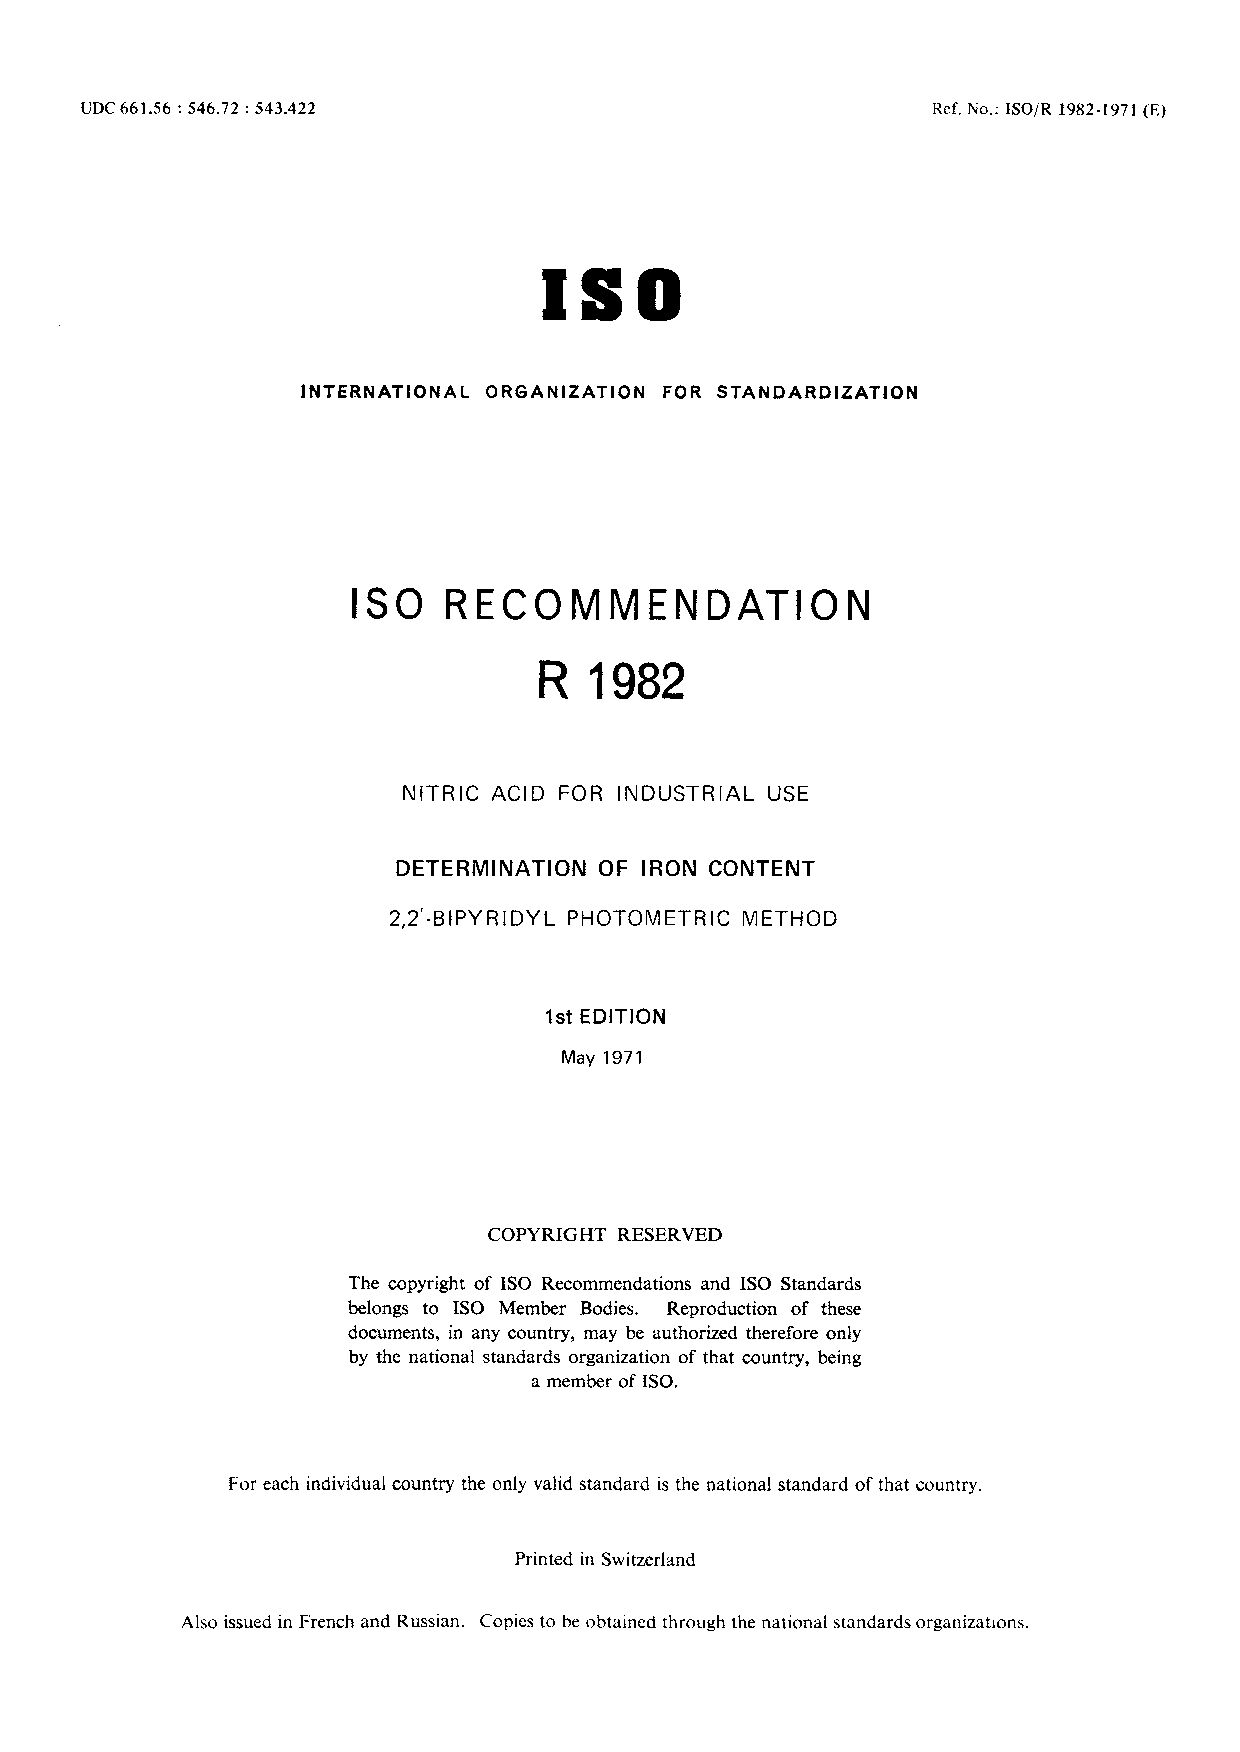 ISO/R 1982:1971